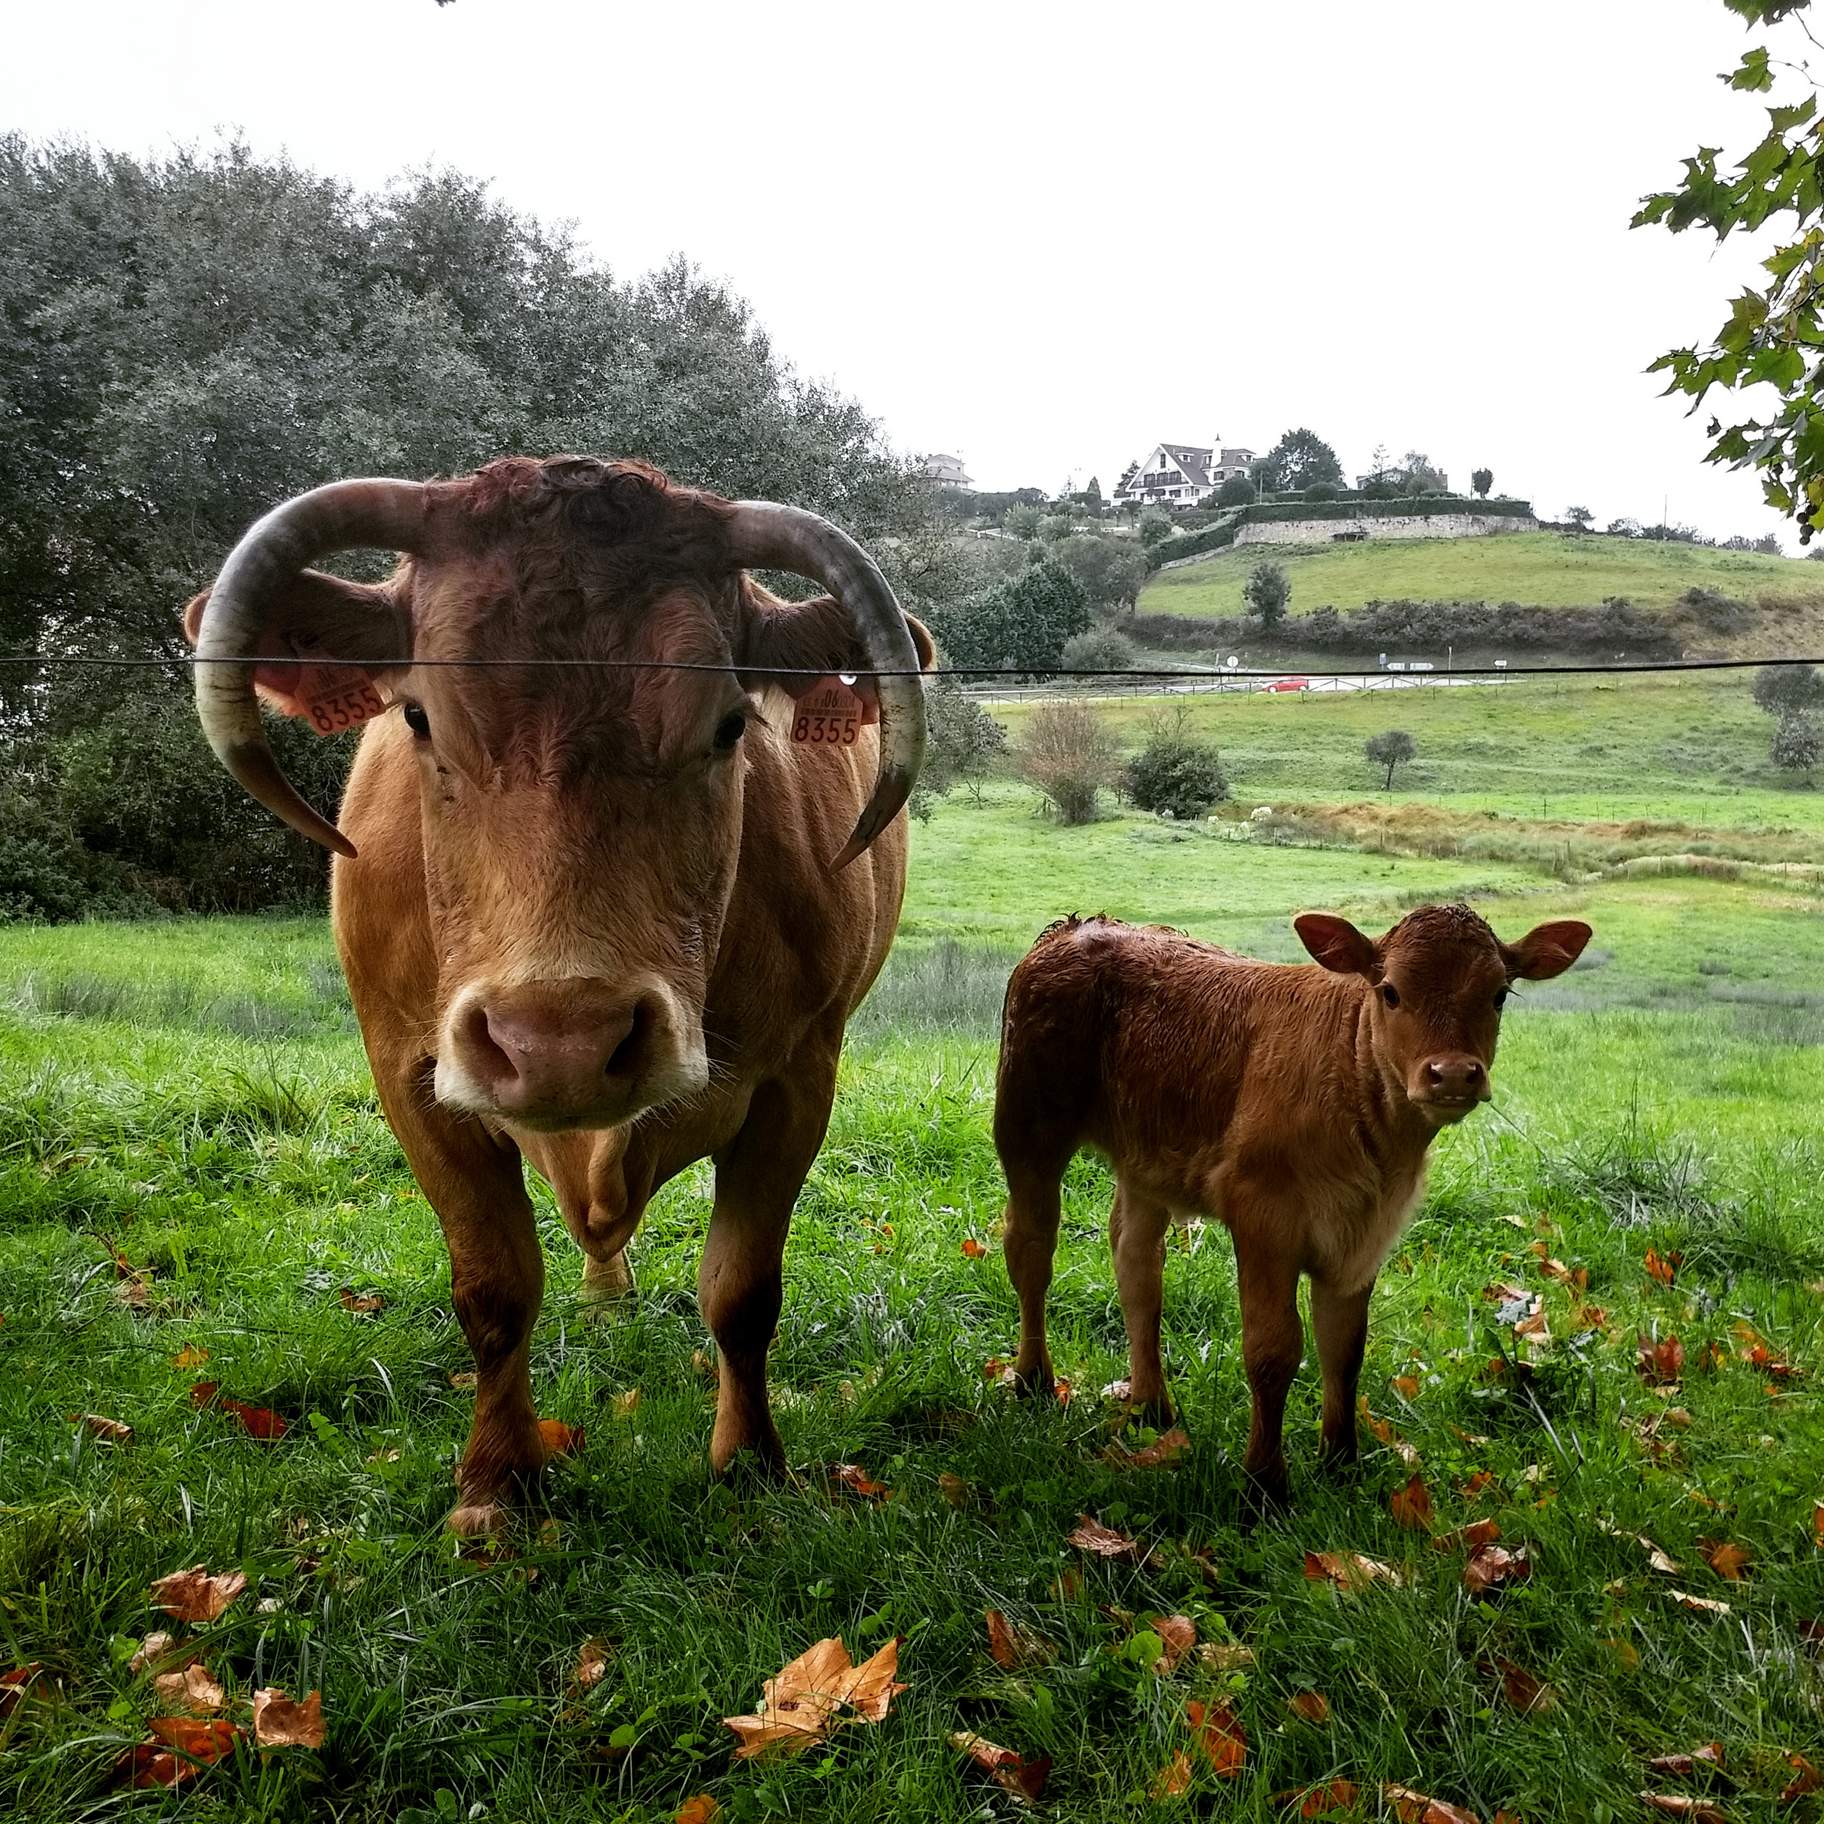 A cow and calf in El Tejo, Spain.